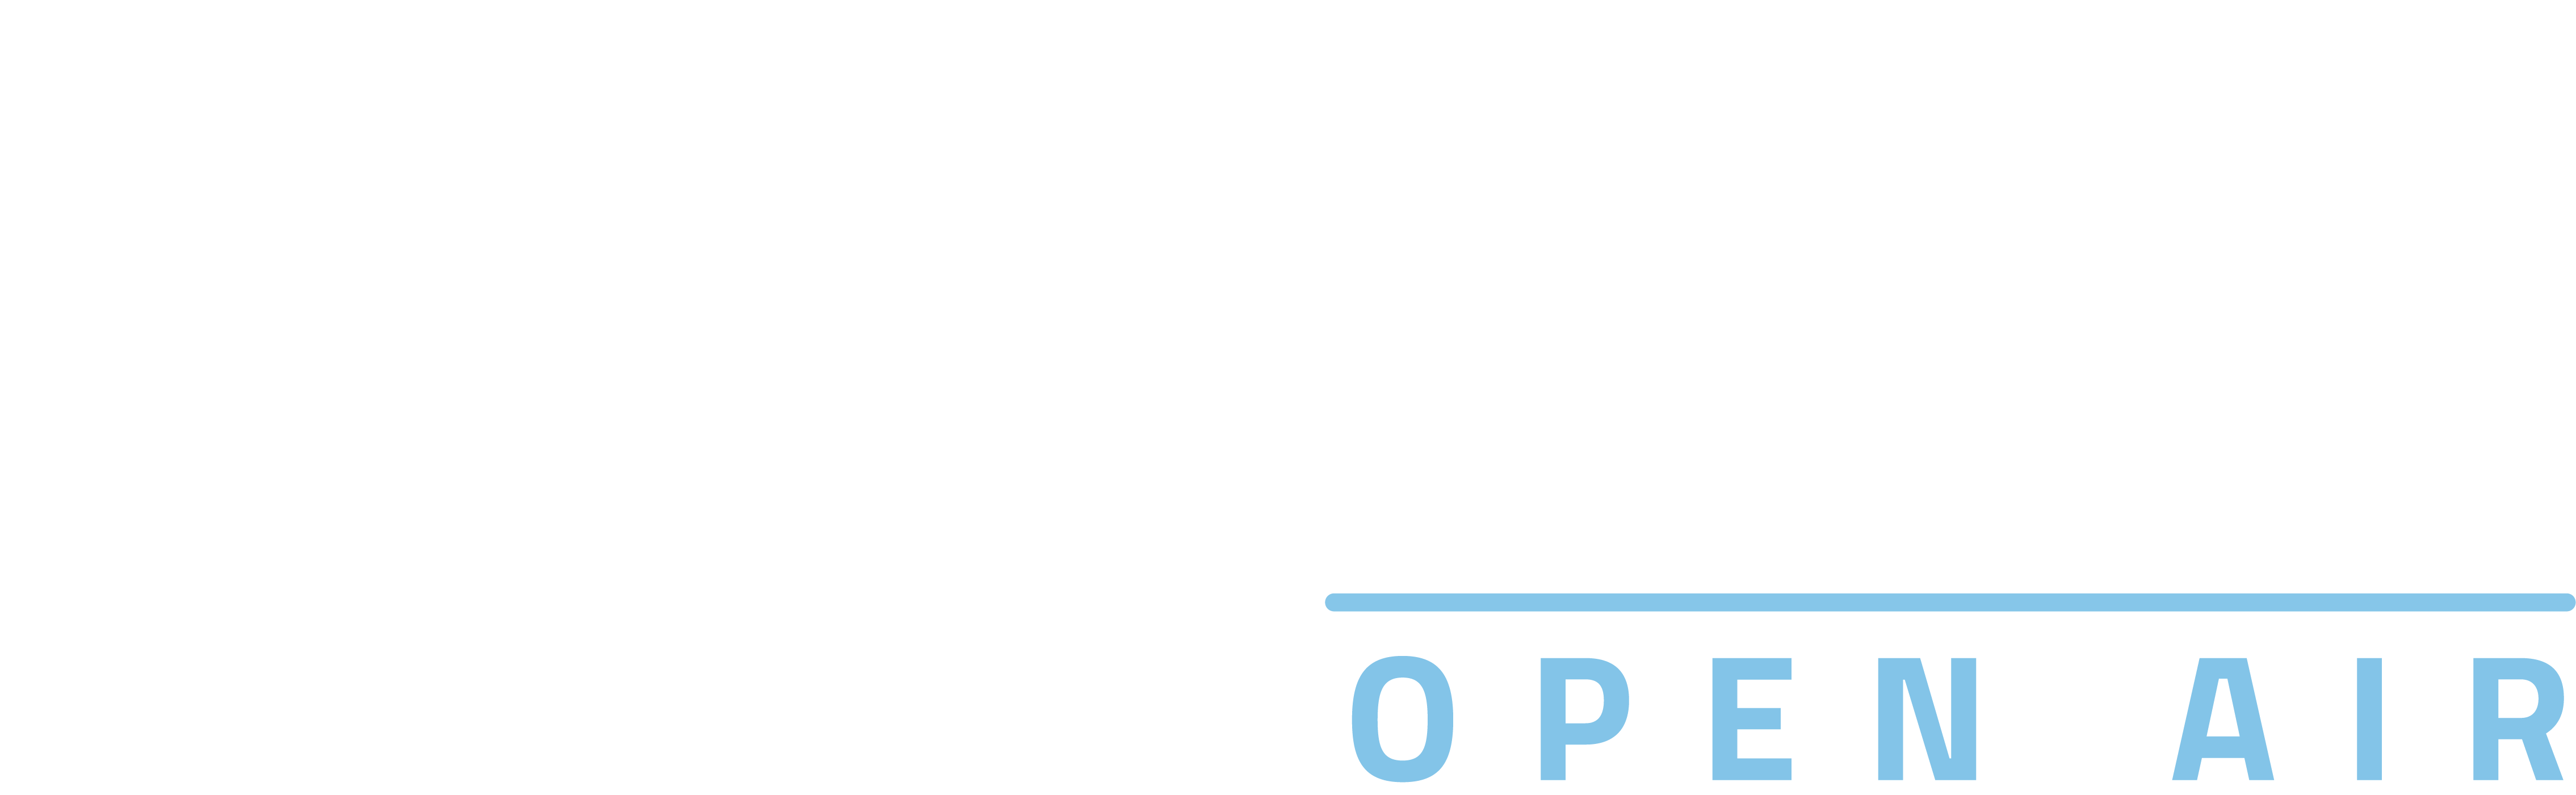 european outdoor film tour 2022 innsbruck